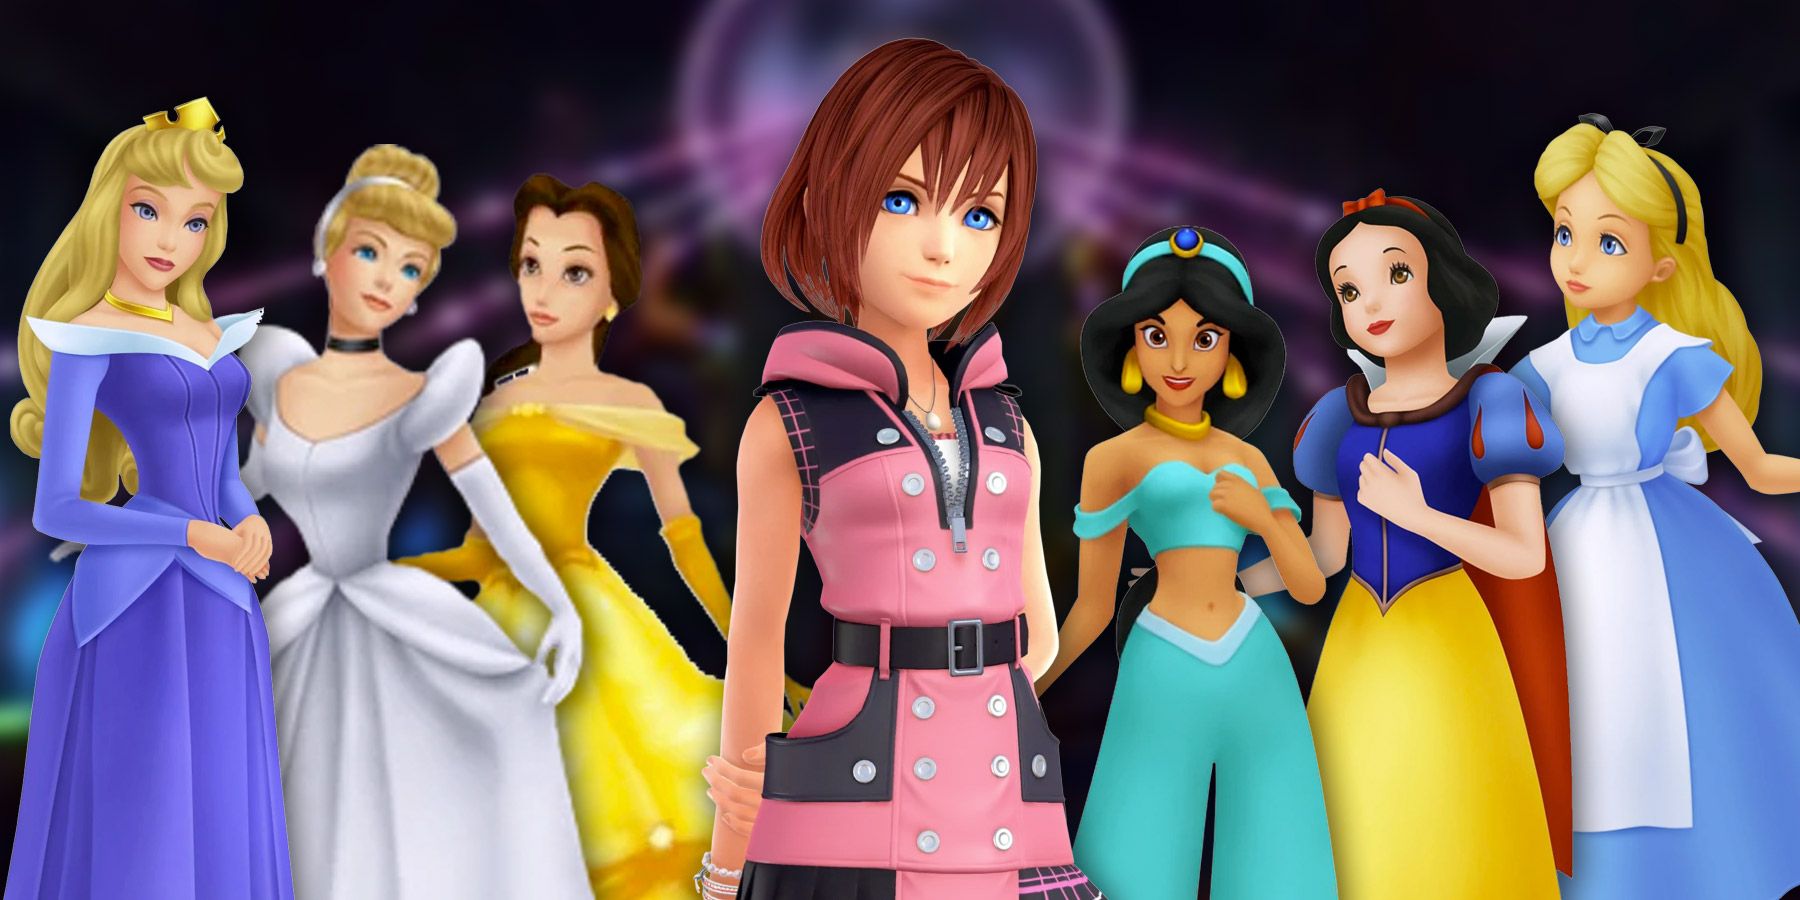 Kingdom Hearts: Explicando a todas las princesas del corazón